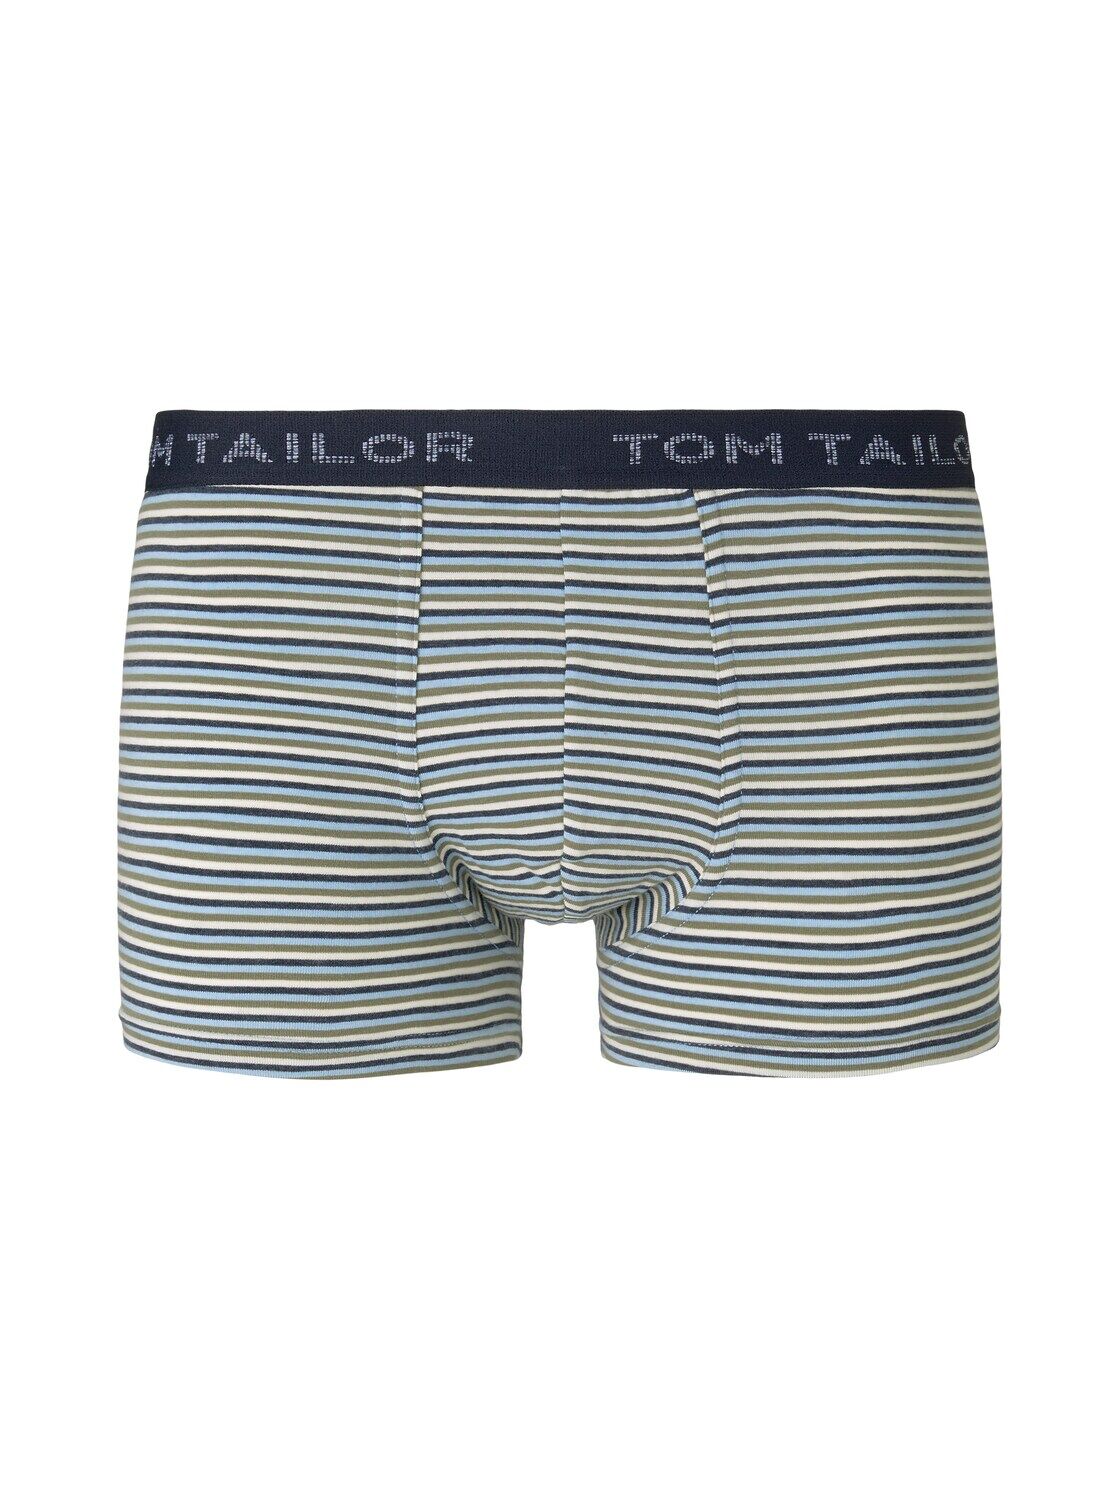 TOM TAILOR Herren Gestreifte Hip Pants, blau, Gr.S/4